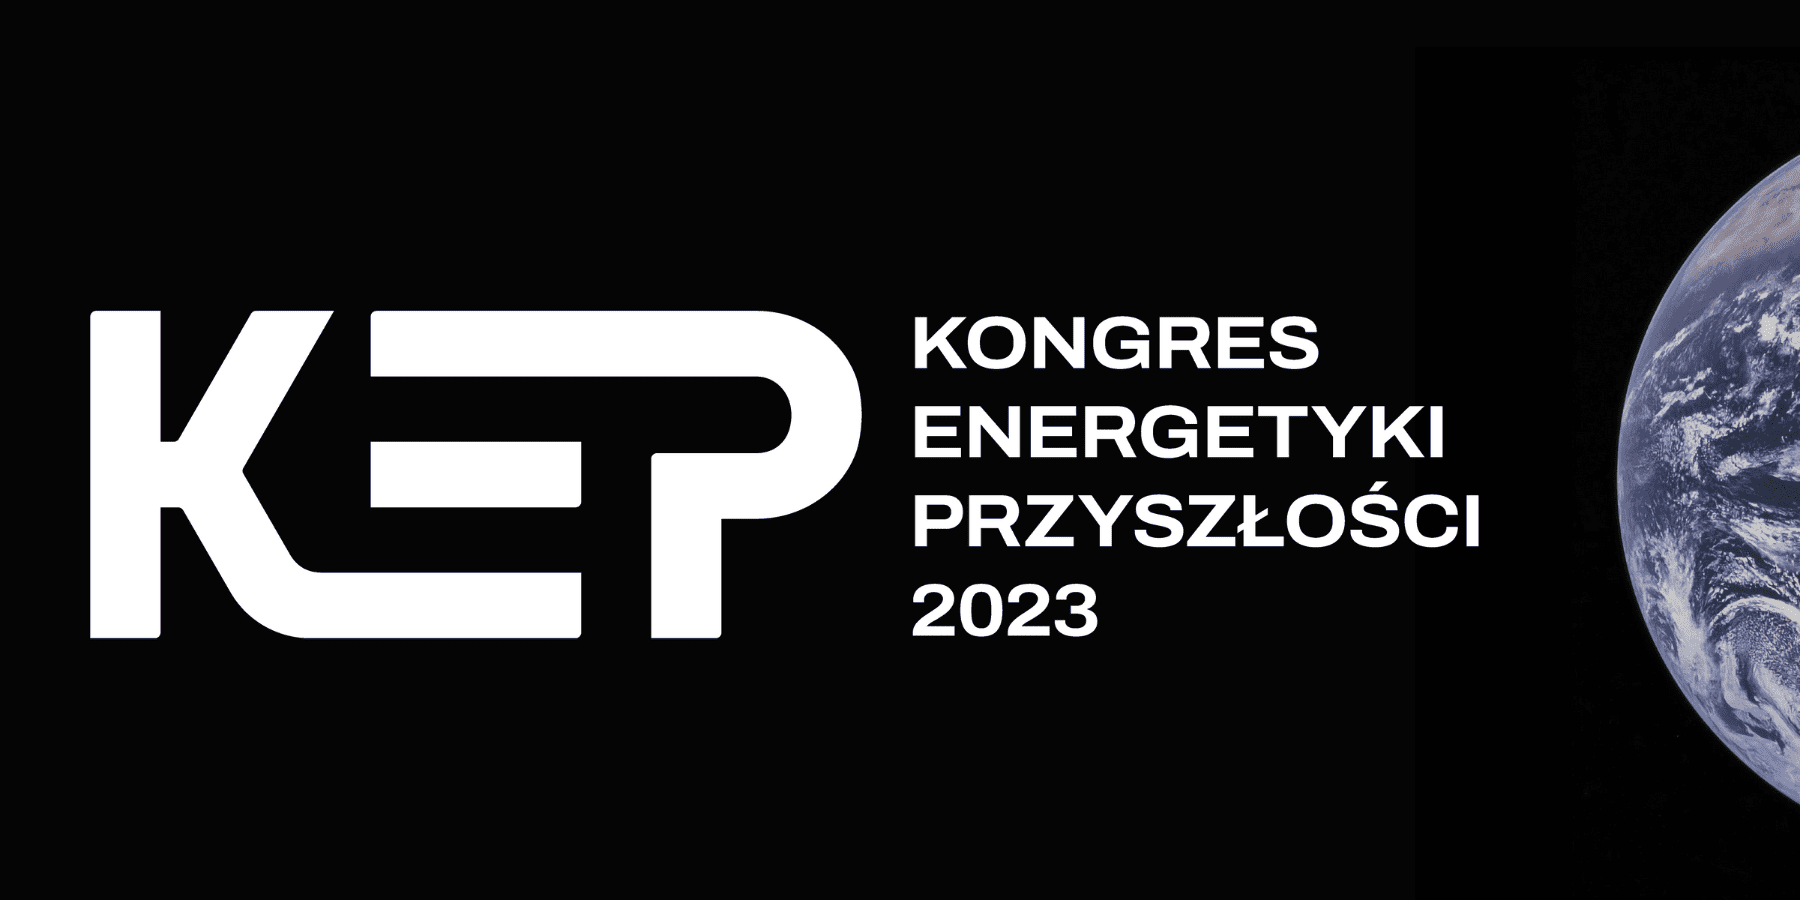 Kongres Energetyki Przyszłości 2023. Znamy już termin i tematykę!